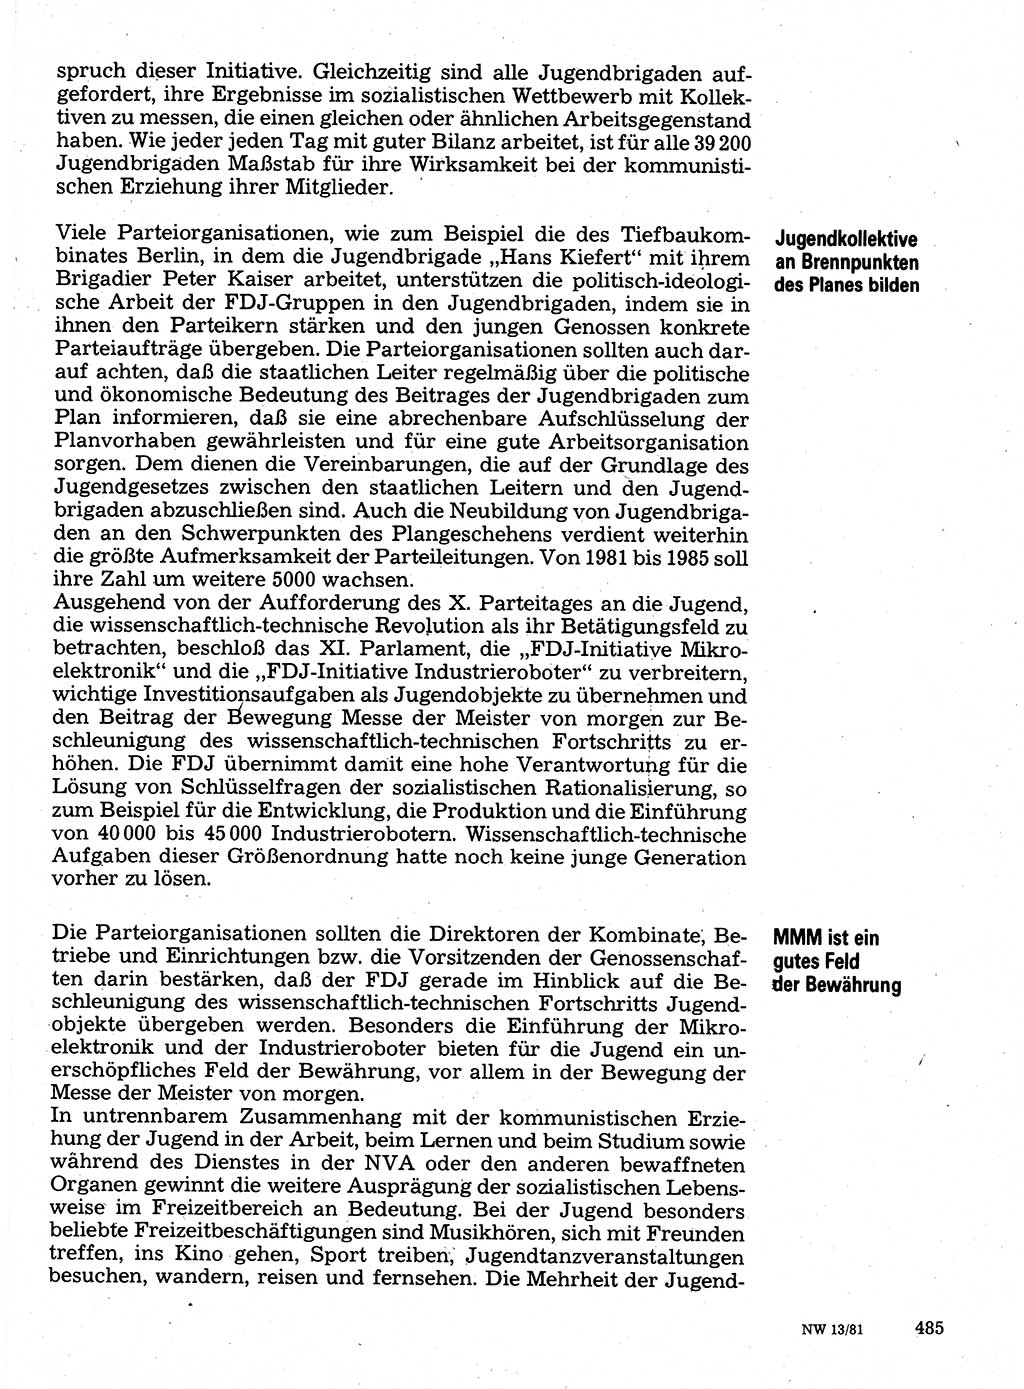 Neuer Weg (NW), Organ des Zentralkomitees (ZK) der SED (Sozialistische Einheitspartei Deutschlands) für Fragen des Parteilebens, 36. Jahrgang [Deutsche Demokratische Republik (DDR)] 1981, Seite 485 (NW ZK SED DDR 1981, S. 485)